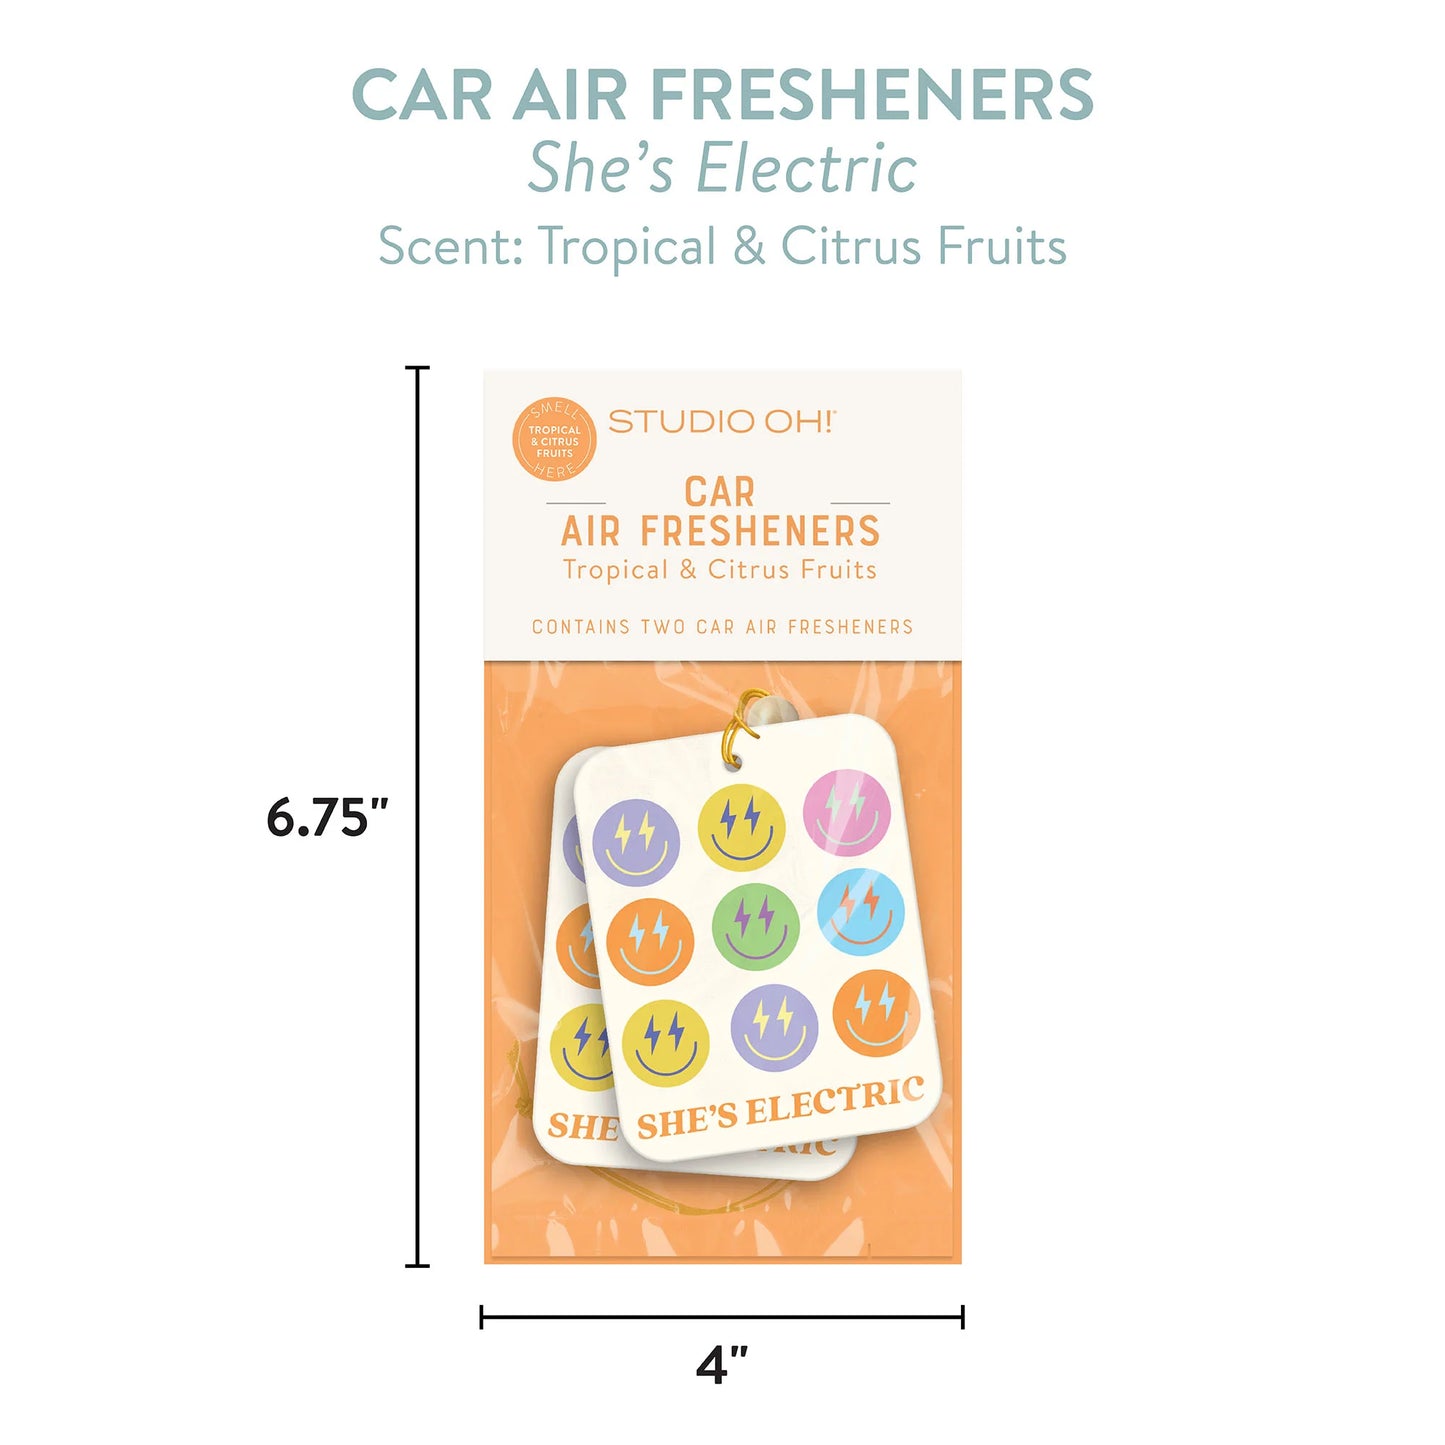 Car Air Fresheners - She’s Electric